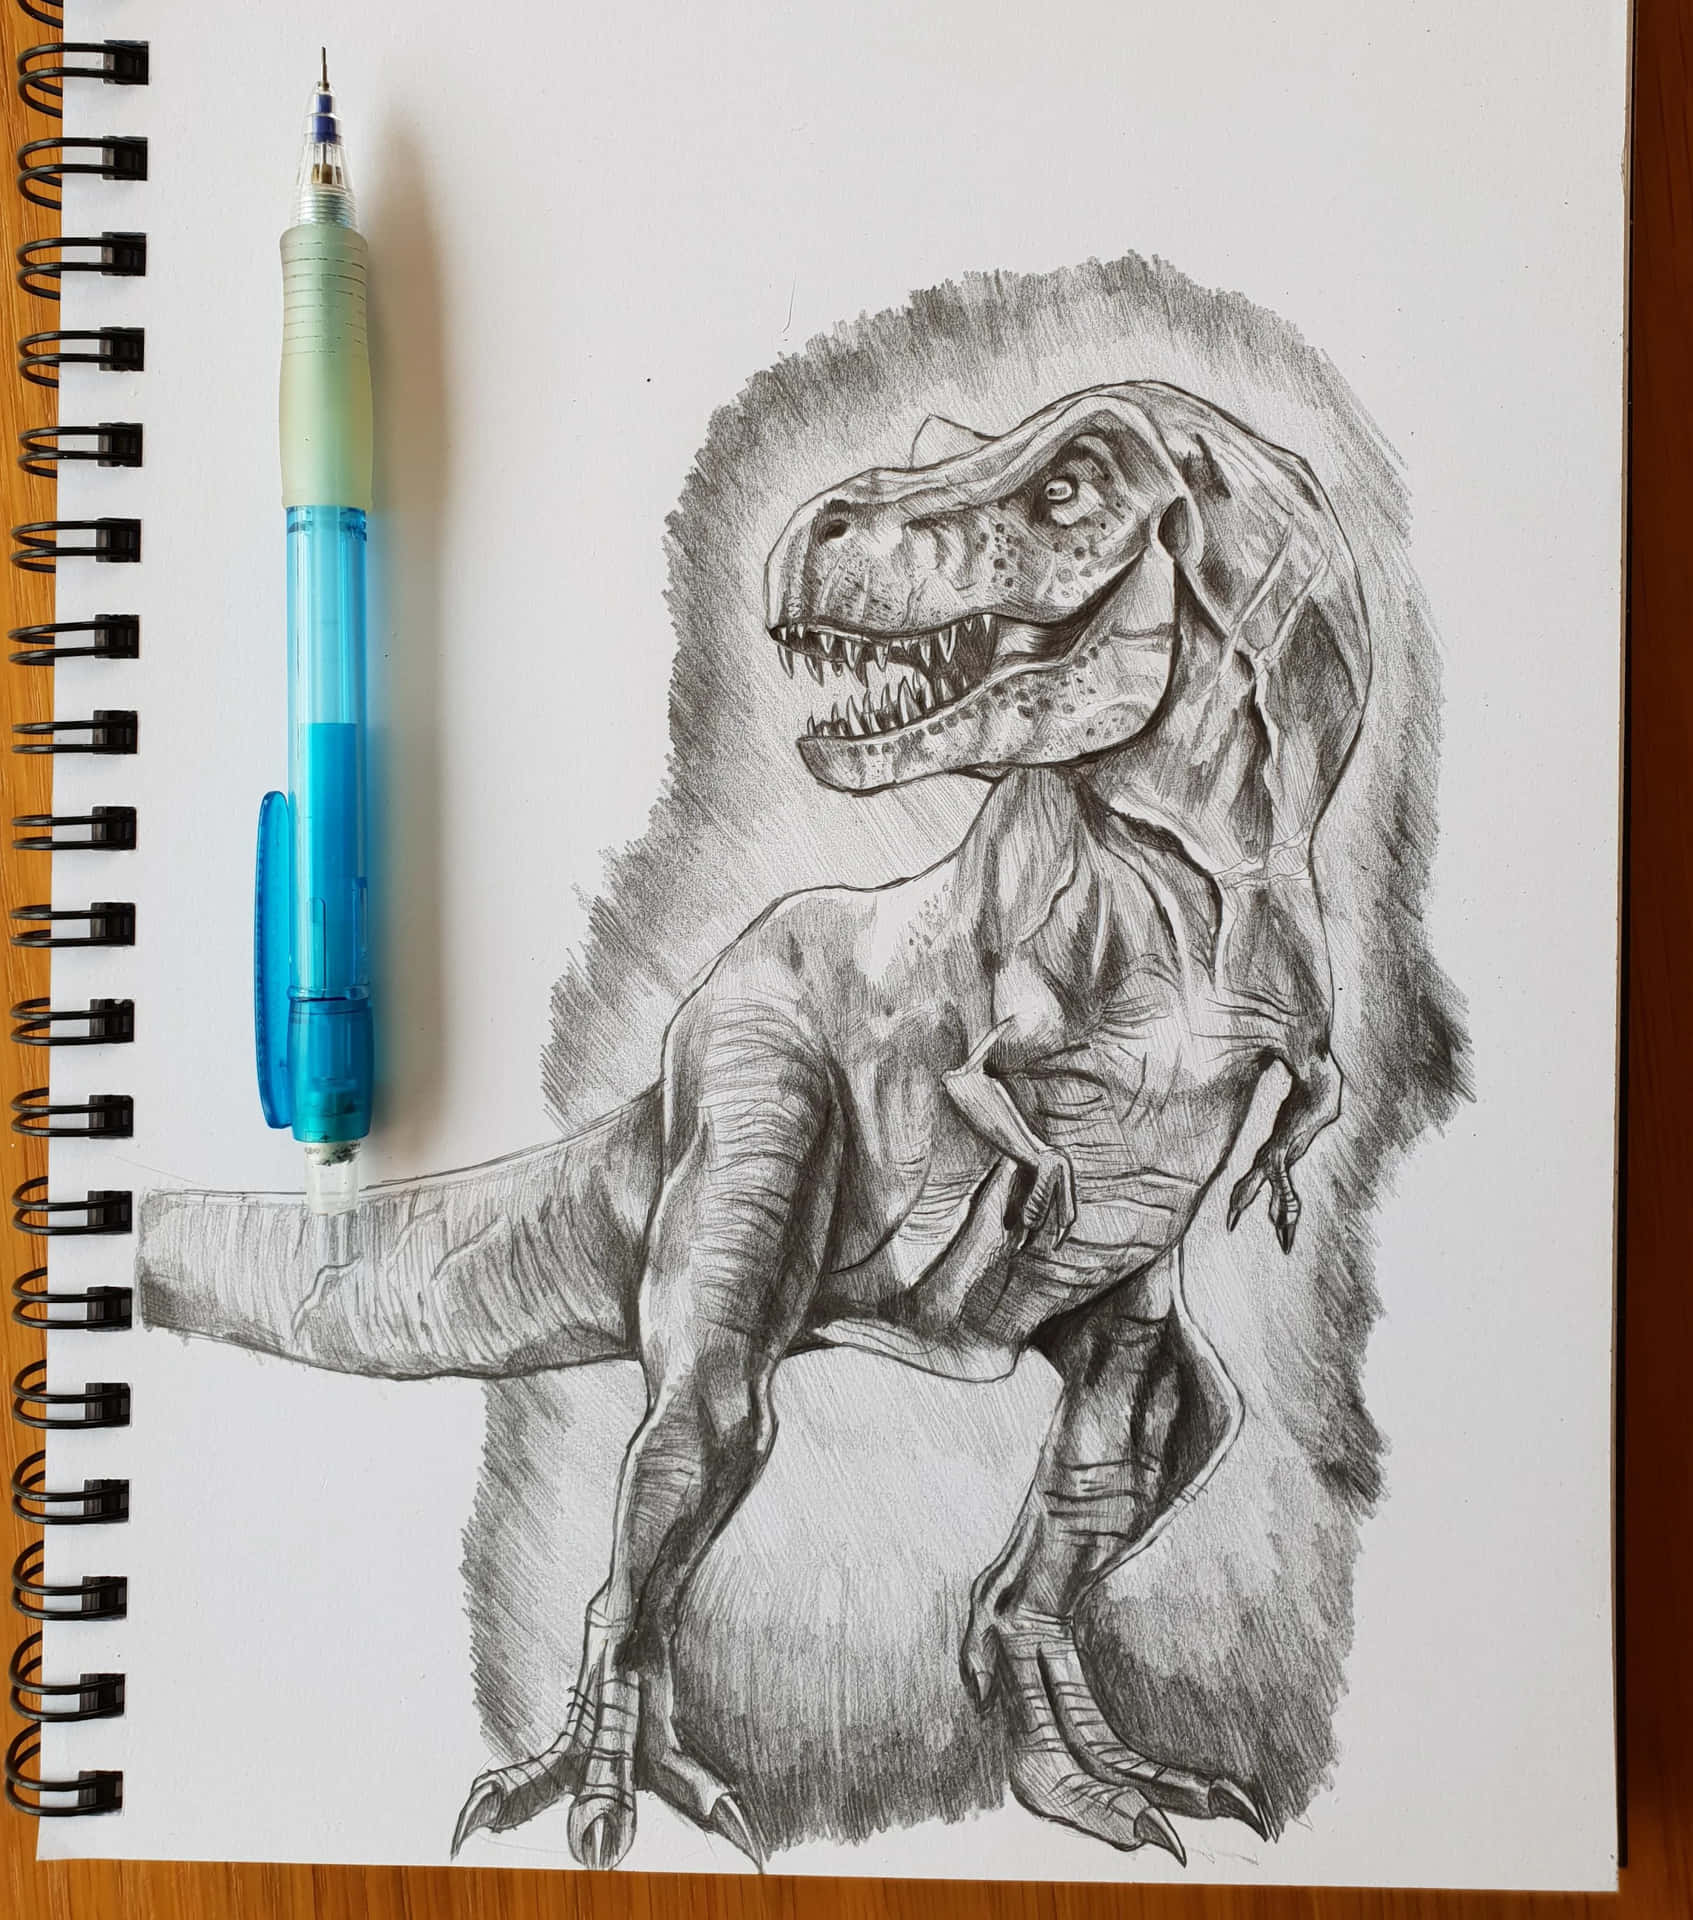 "A Sketch of a Dinosaur"